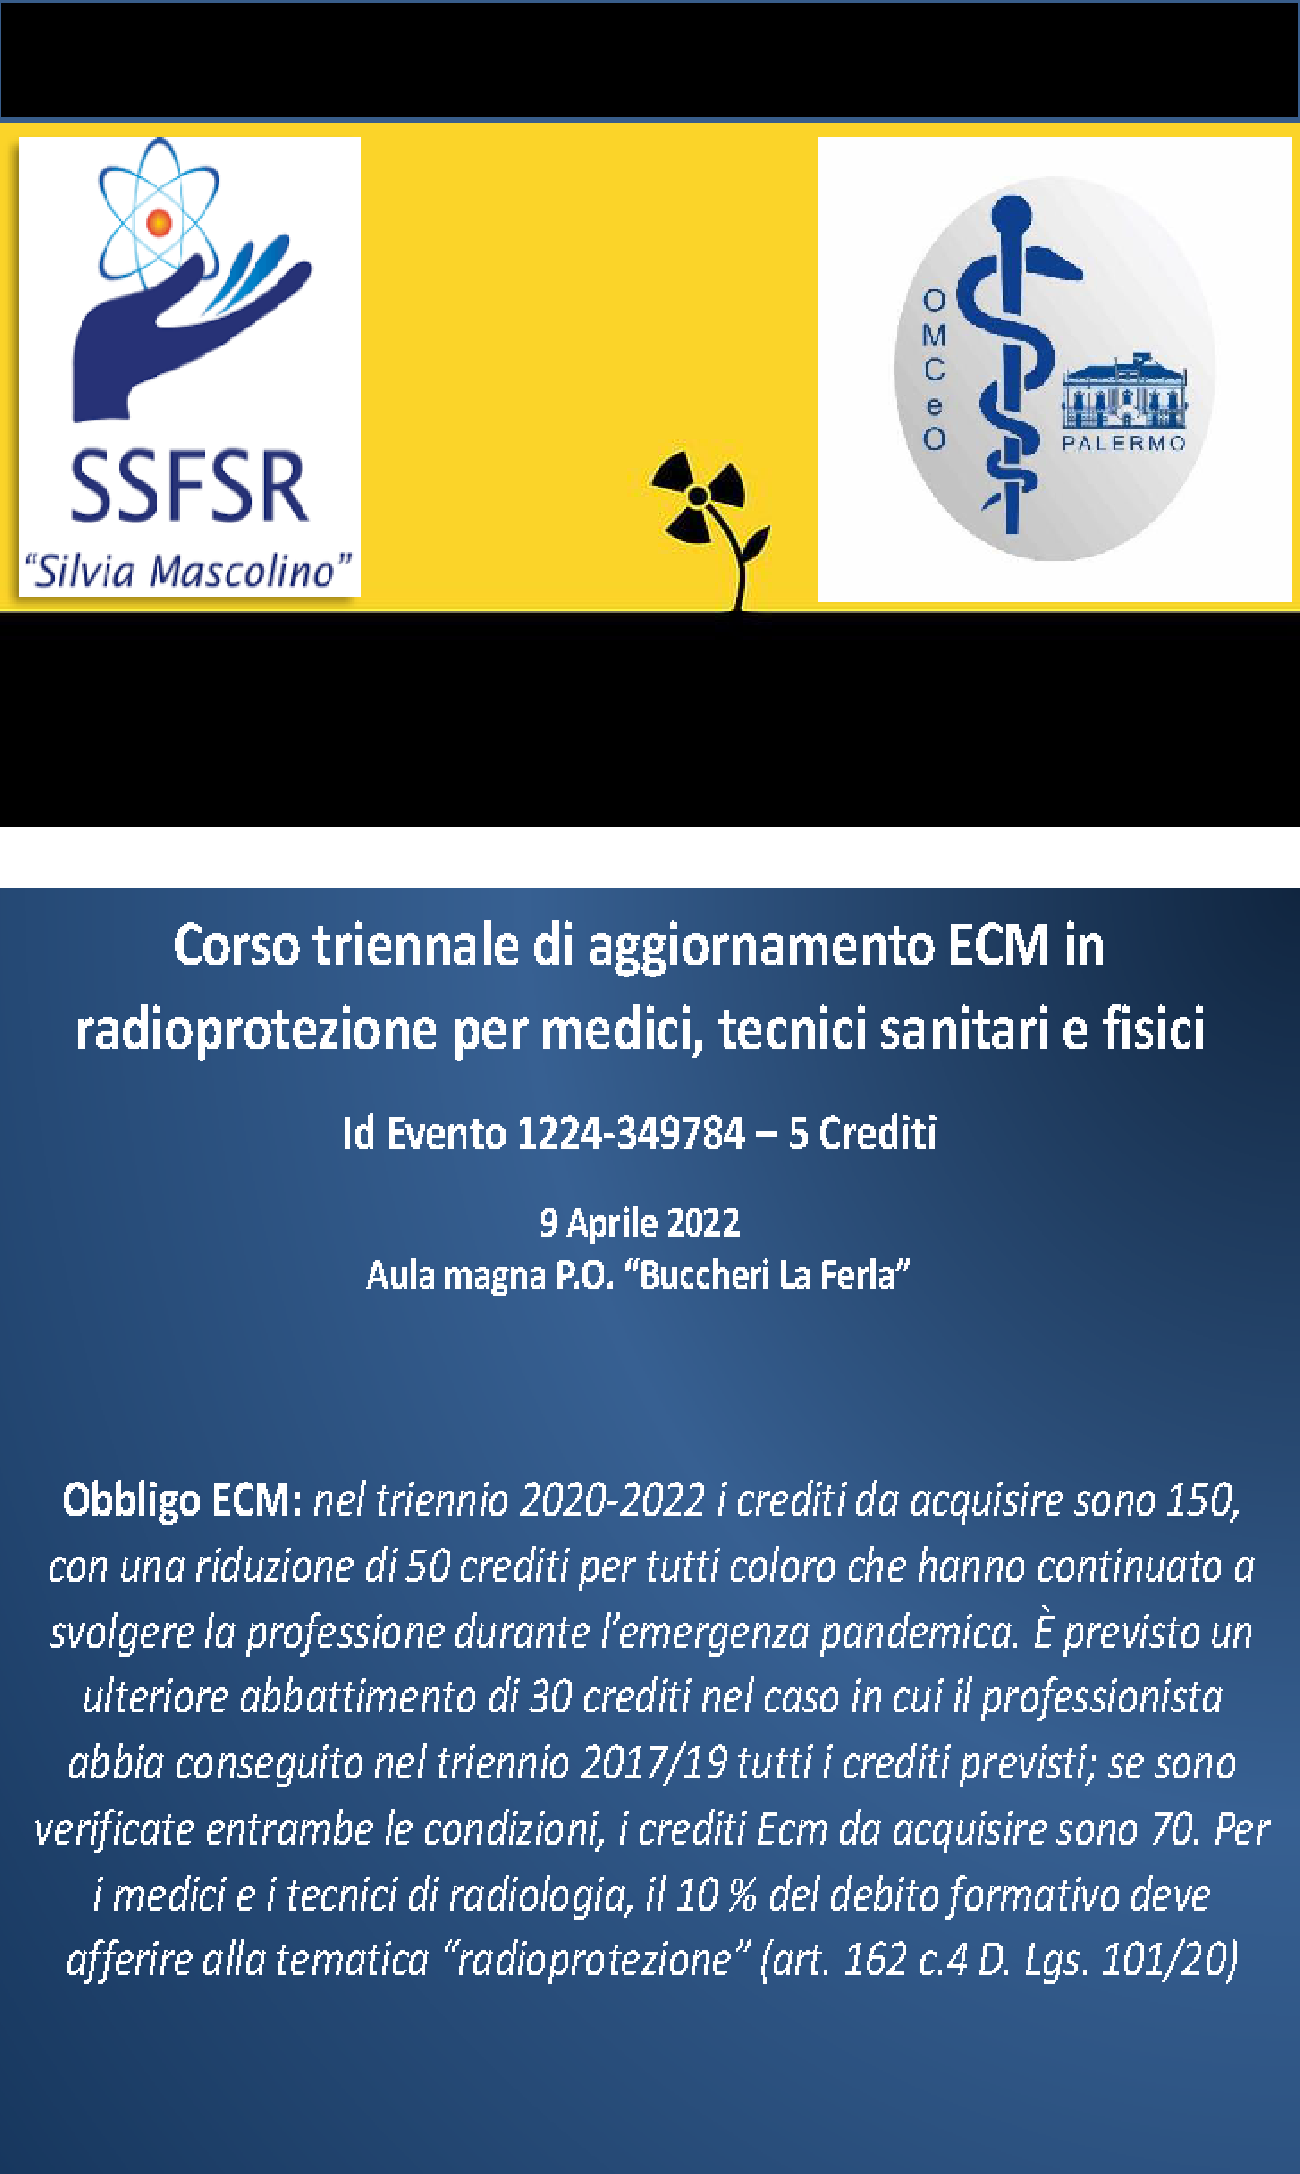 Corso triennale di aggiornamento ECM in radioprotezione per medici, tecnici sanitari e fisici 